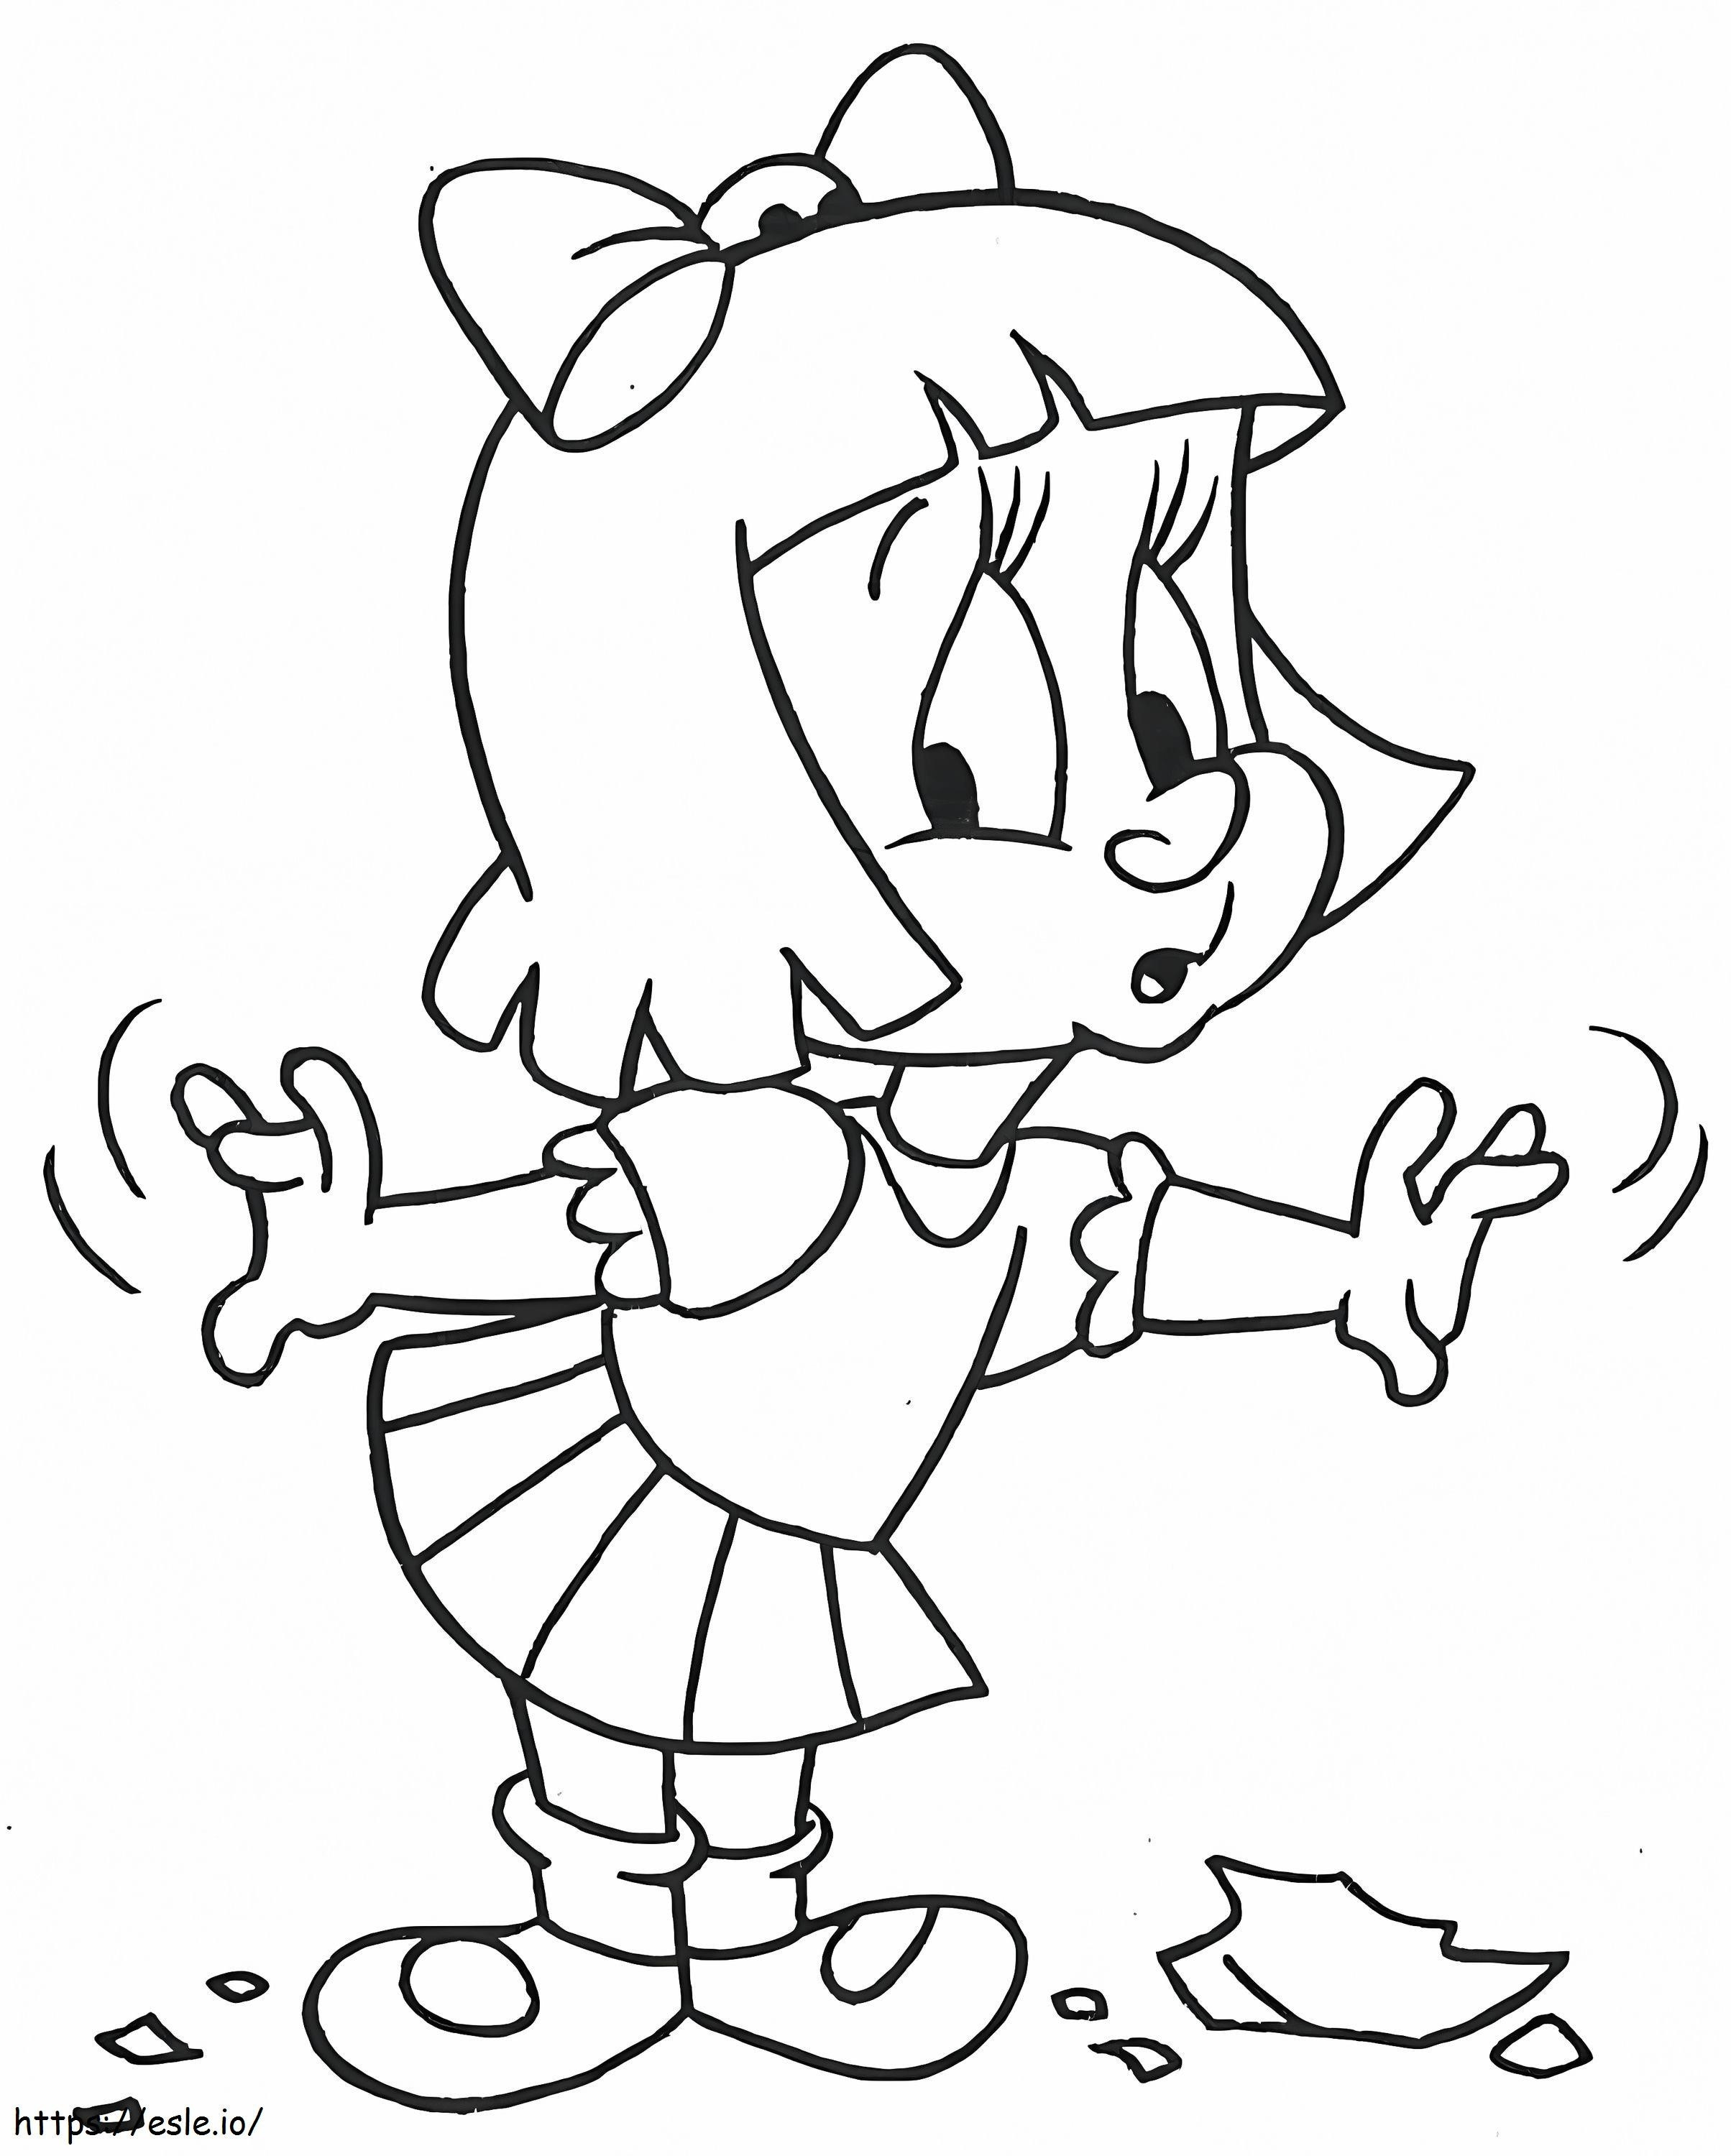 Elmyra Duff, de Tiny Toon Adventures para colorir